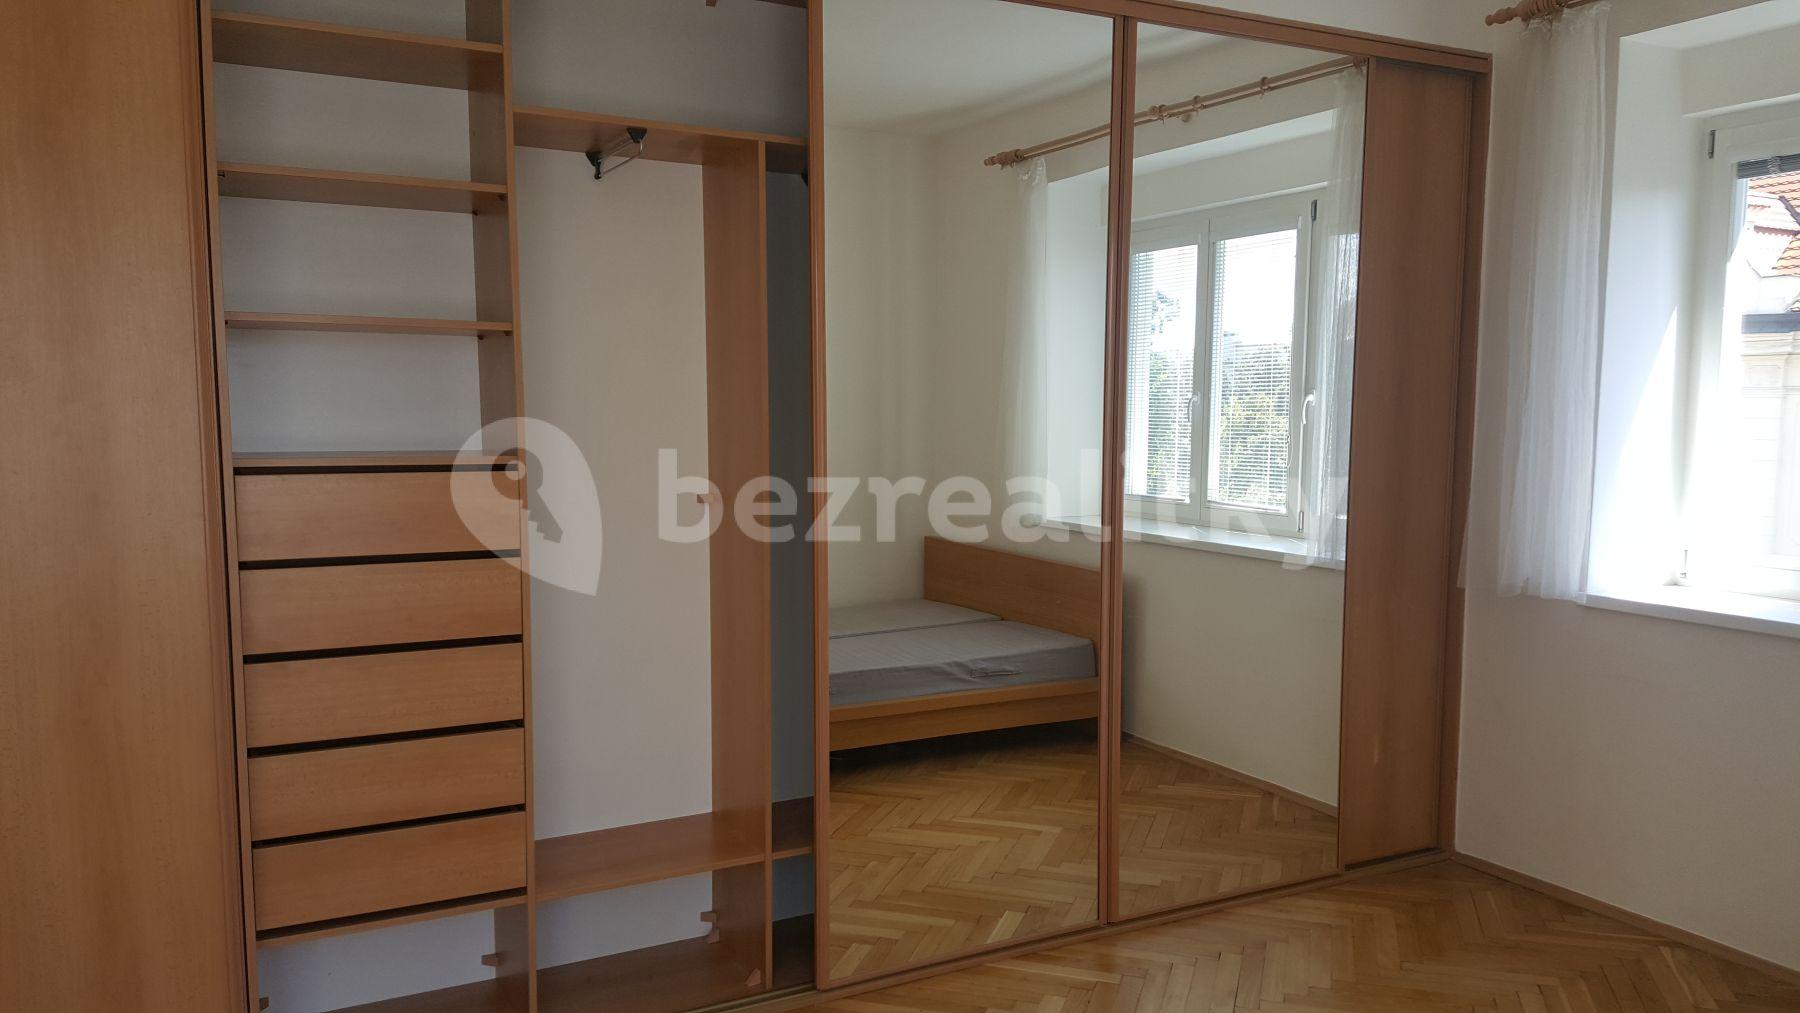 1 bedroom flat to rent, 50 m², U Vršovického Nádraží, Prague, Prague